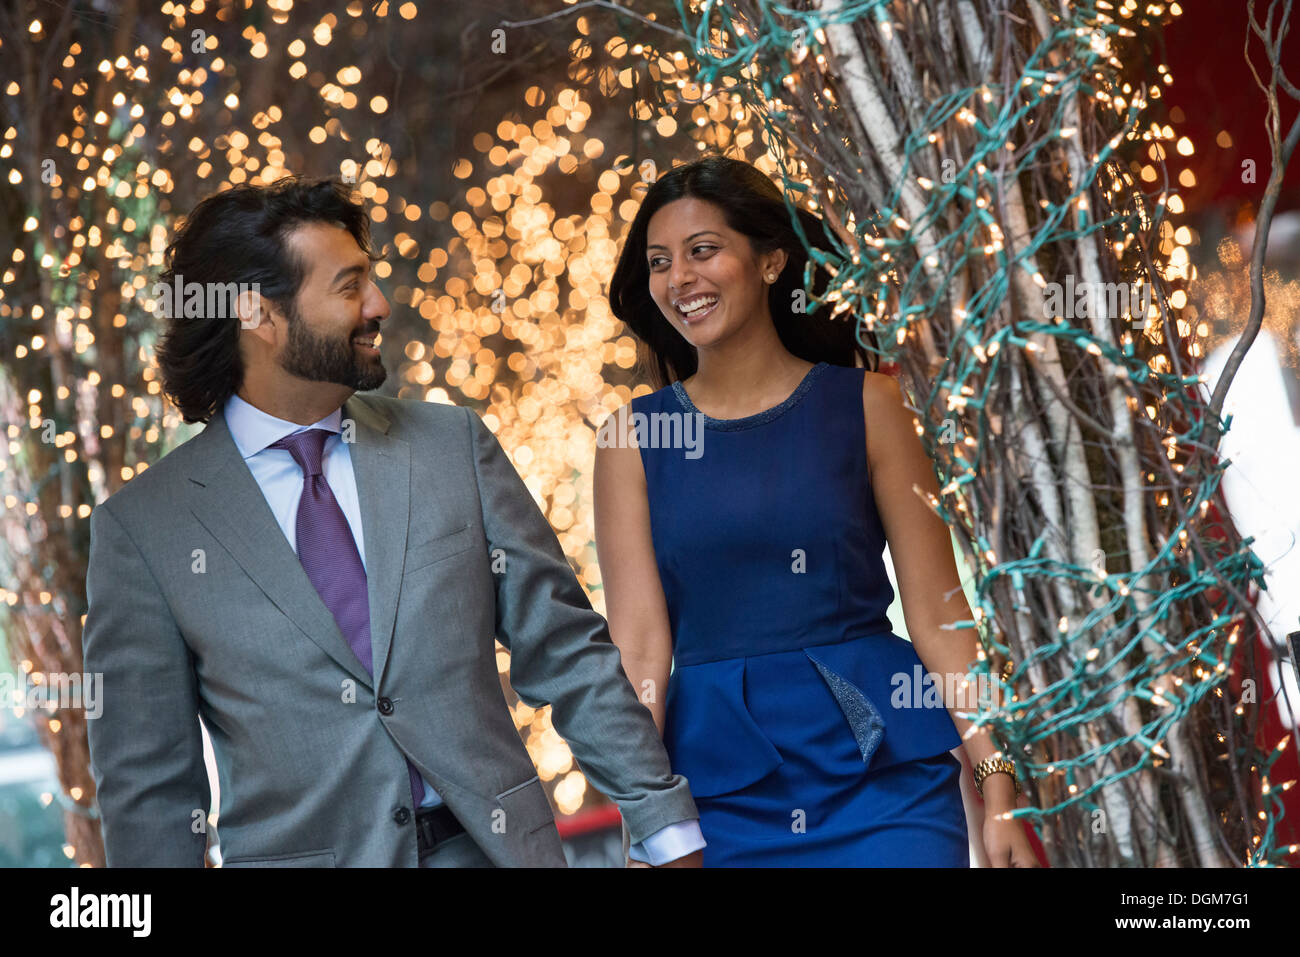 Business-Leute. Zwei Menschen, Mann und Frau Hand in Hand und Fuß unter einer Pergola mit Lichterketten beleuchtet. Stockfoto